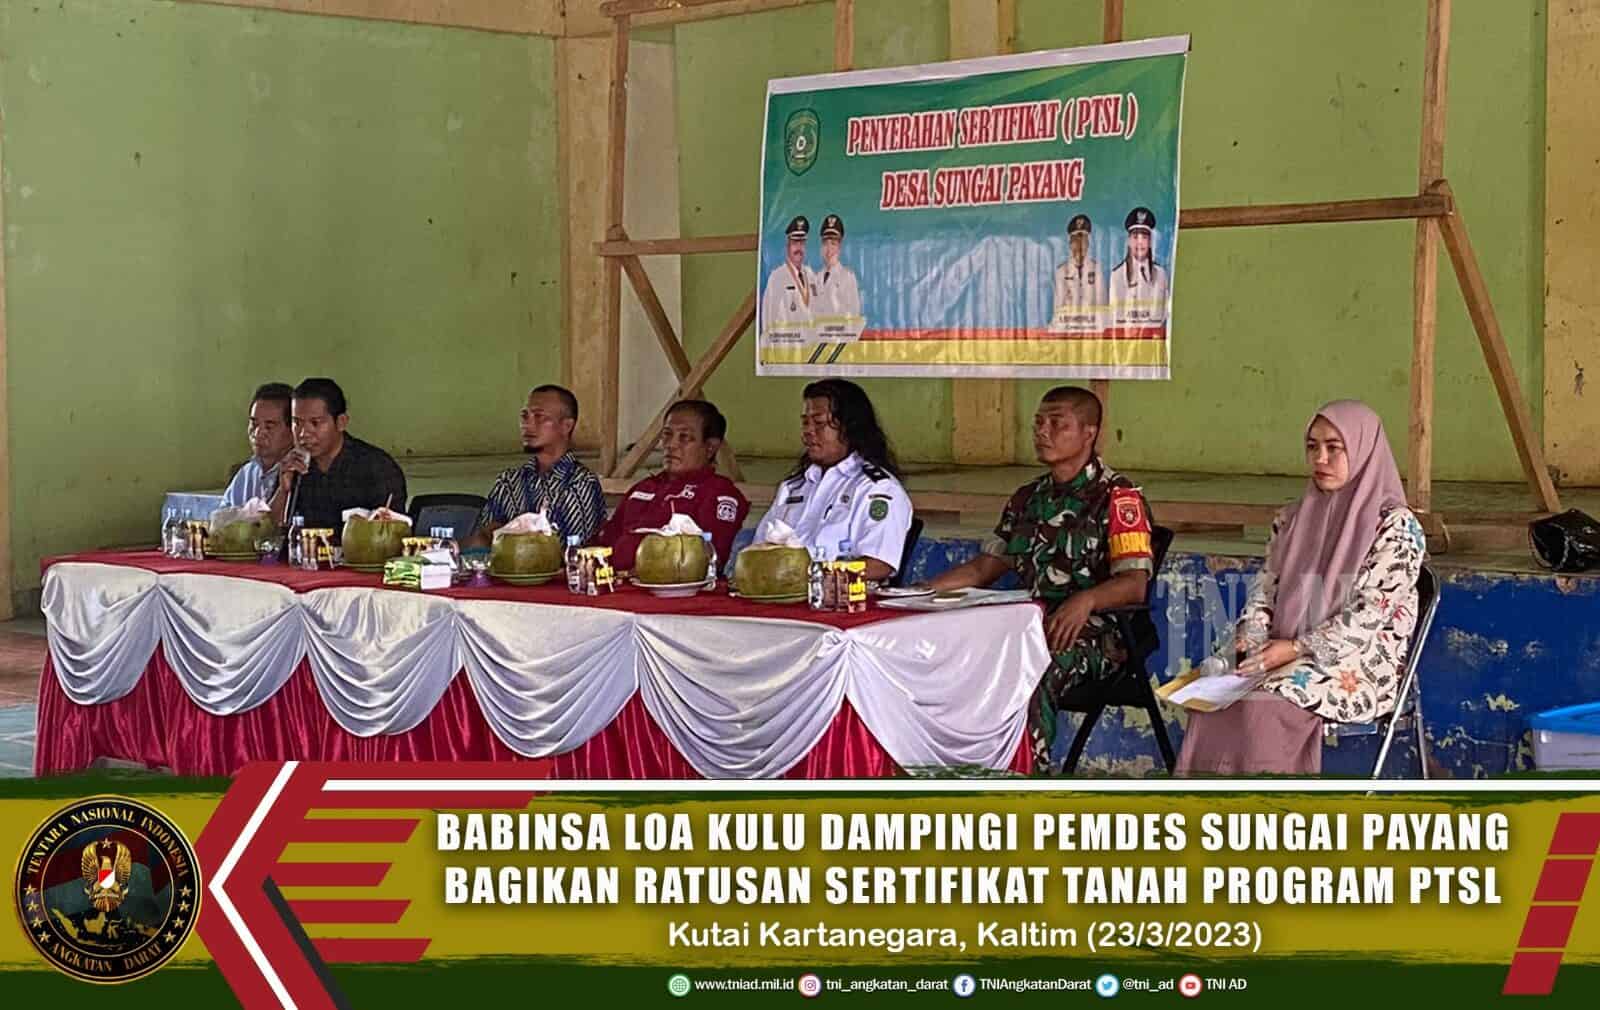 Babinsa Loa Kulu Sertu Giono Dampingi Pemdes Sungai Payang Bagikan Ratusan Sertifikat Tanah Program PTSL